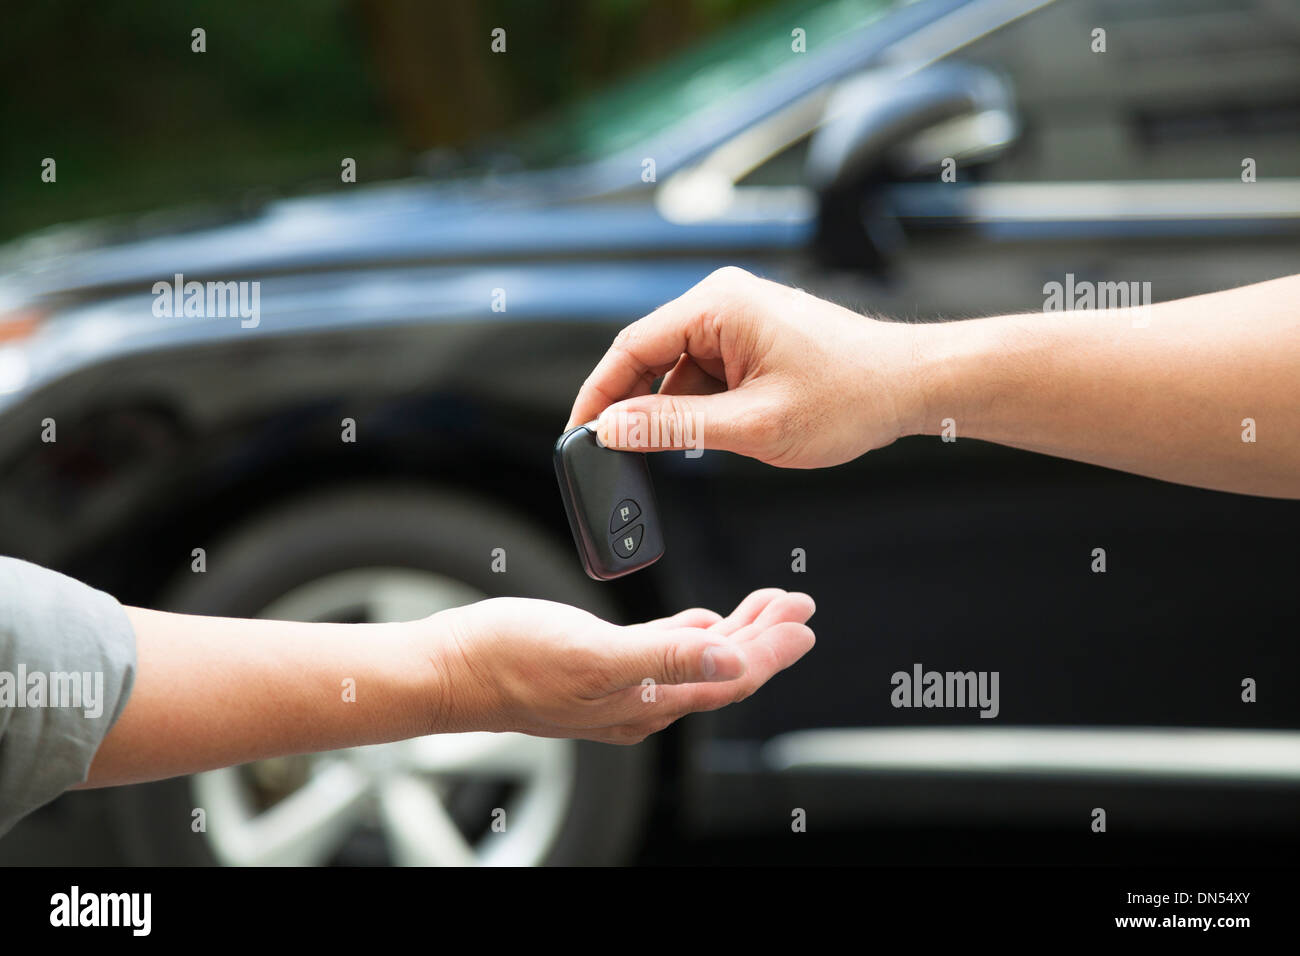 Autoschlüssel mit roten Geschenk bow-Konzept der neuen Auto Geschenk  Stockfotografie - Alamy